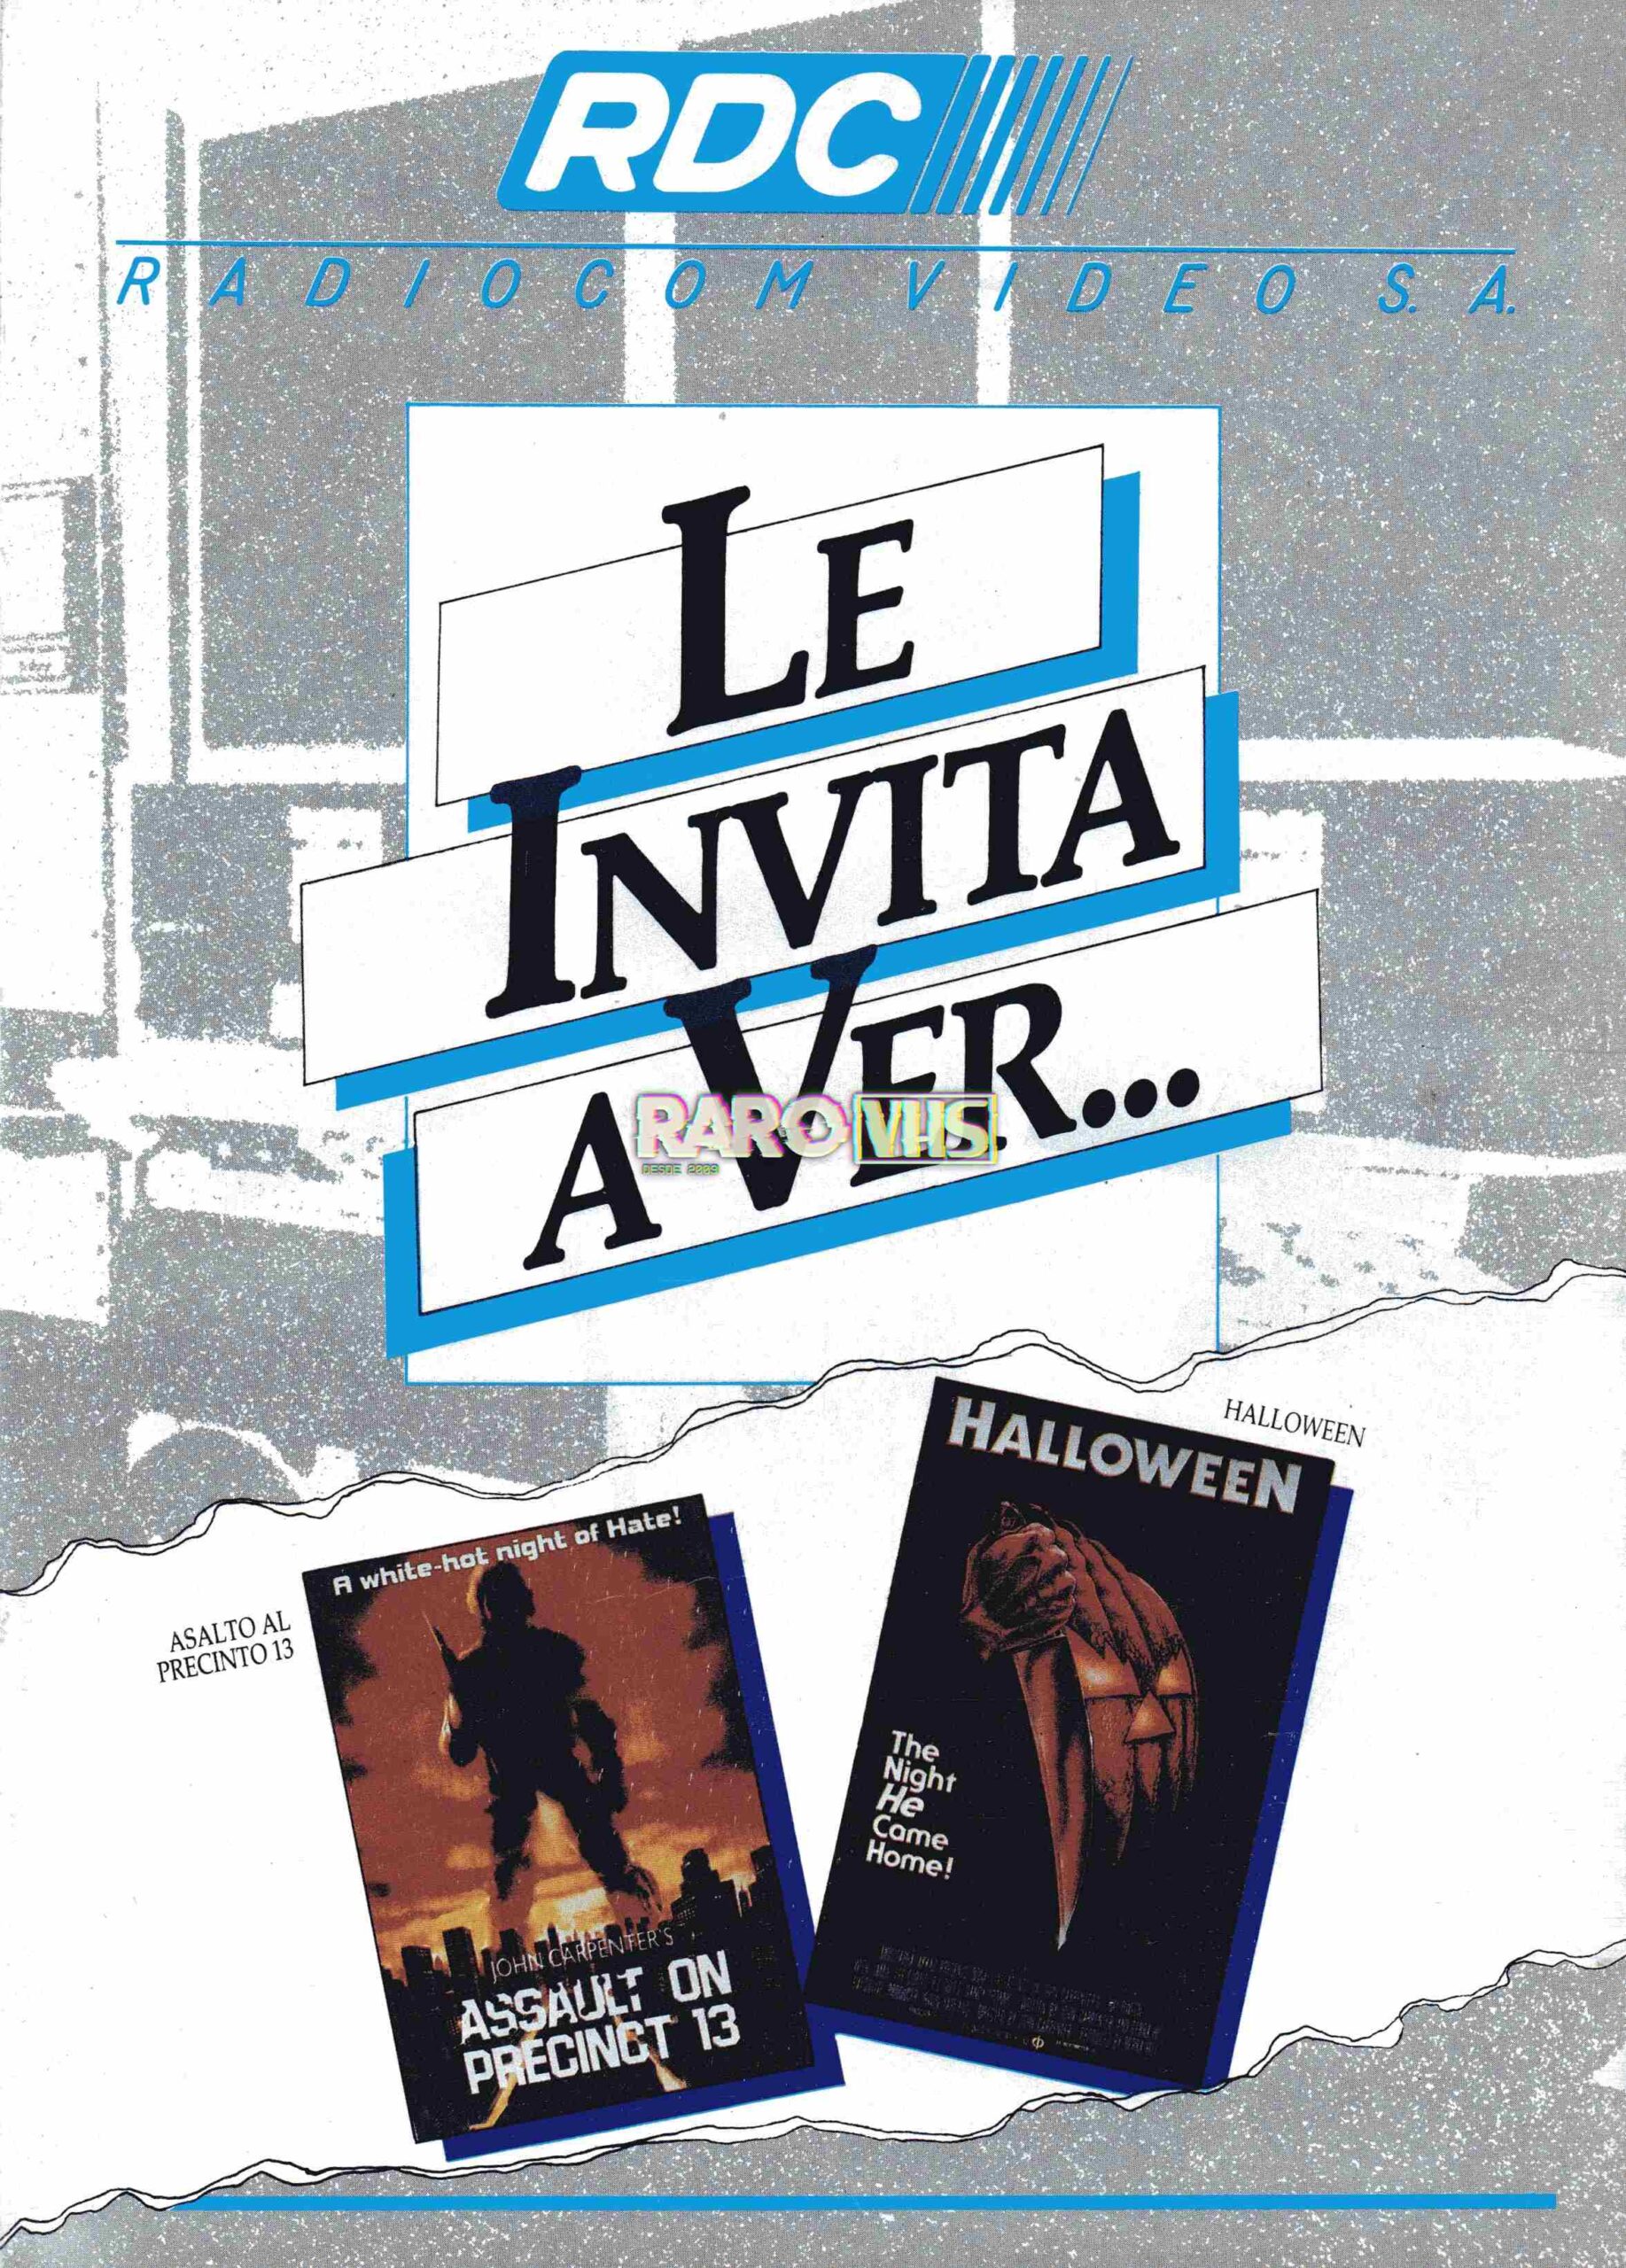 Estrenos de Radiocom de 1986: Halloween y Asalto en el Precinto 13, entre otras